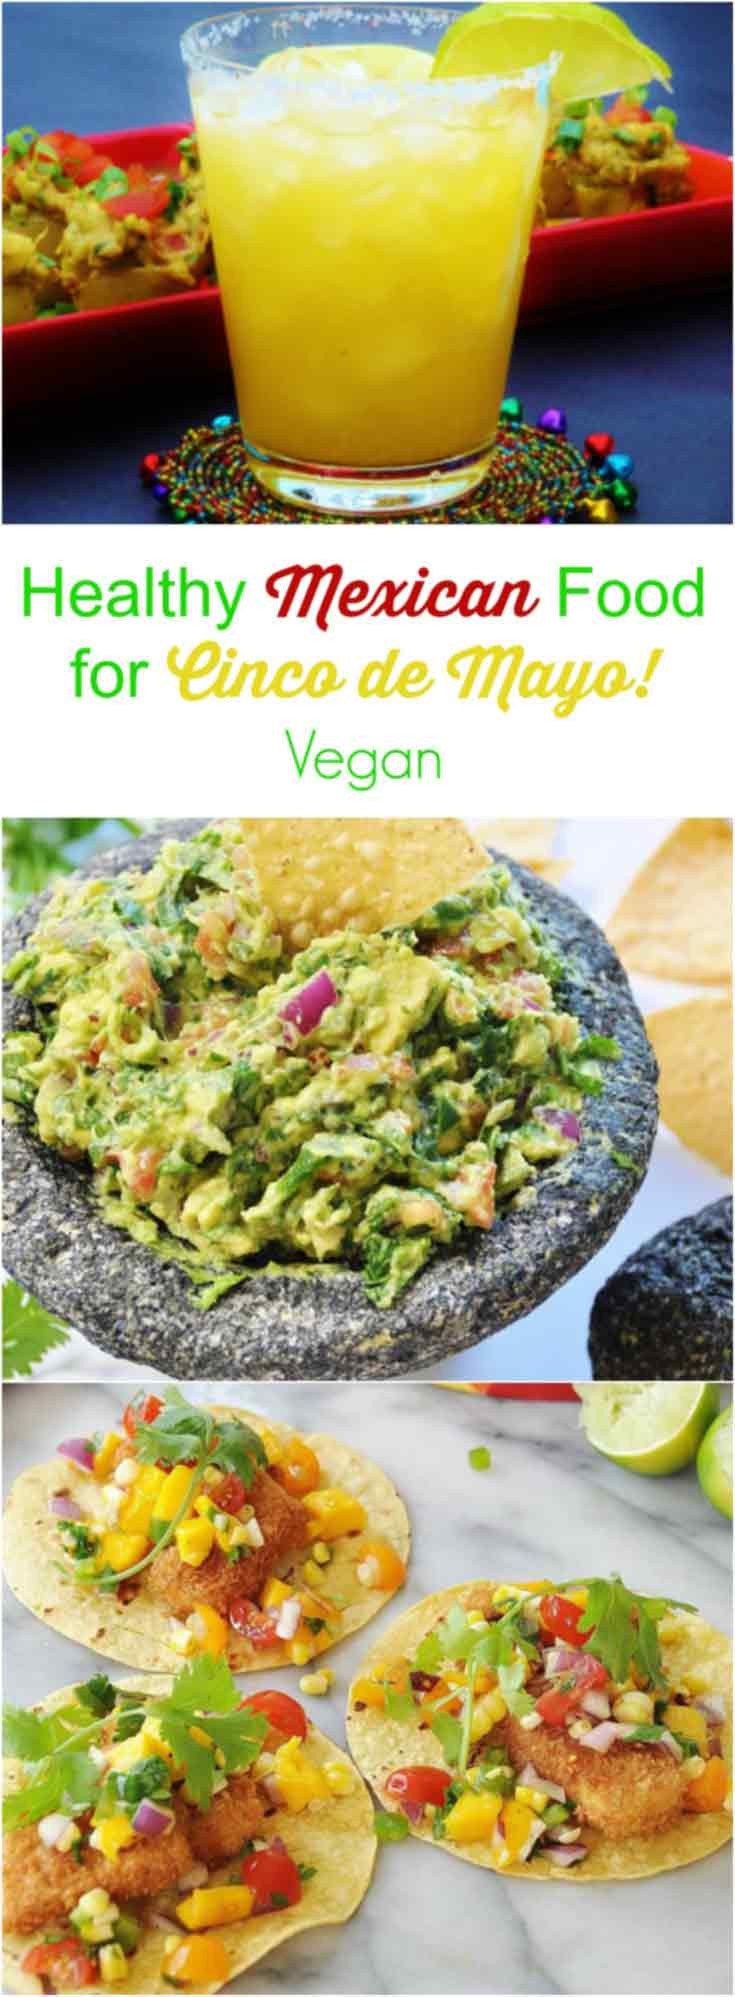 Mexican Food For Cinco De Mayo
 Healthy Vegan Recipes for Cinco de Mayo Veganosity